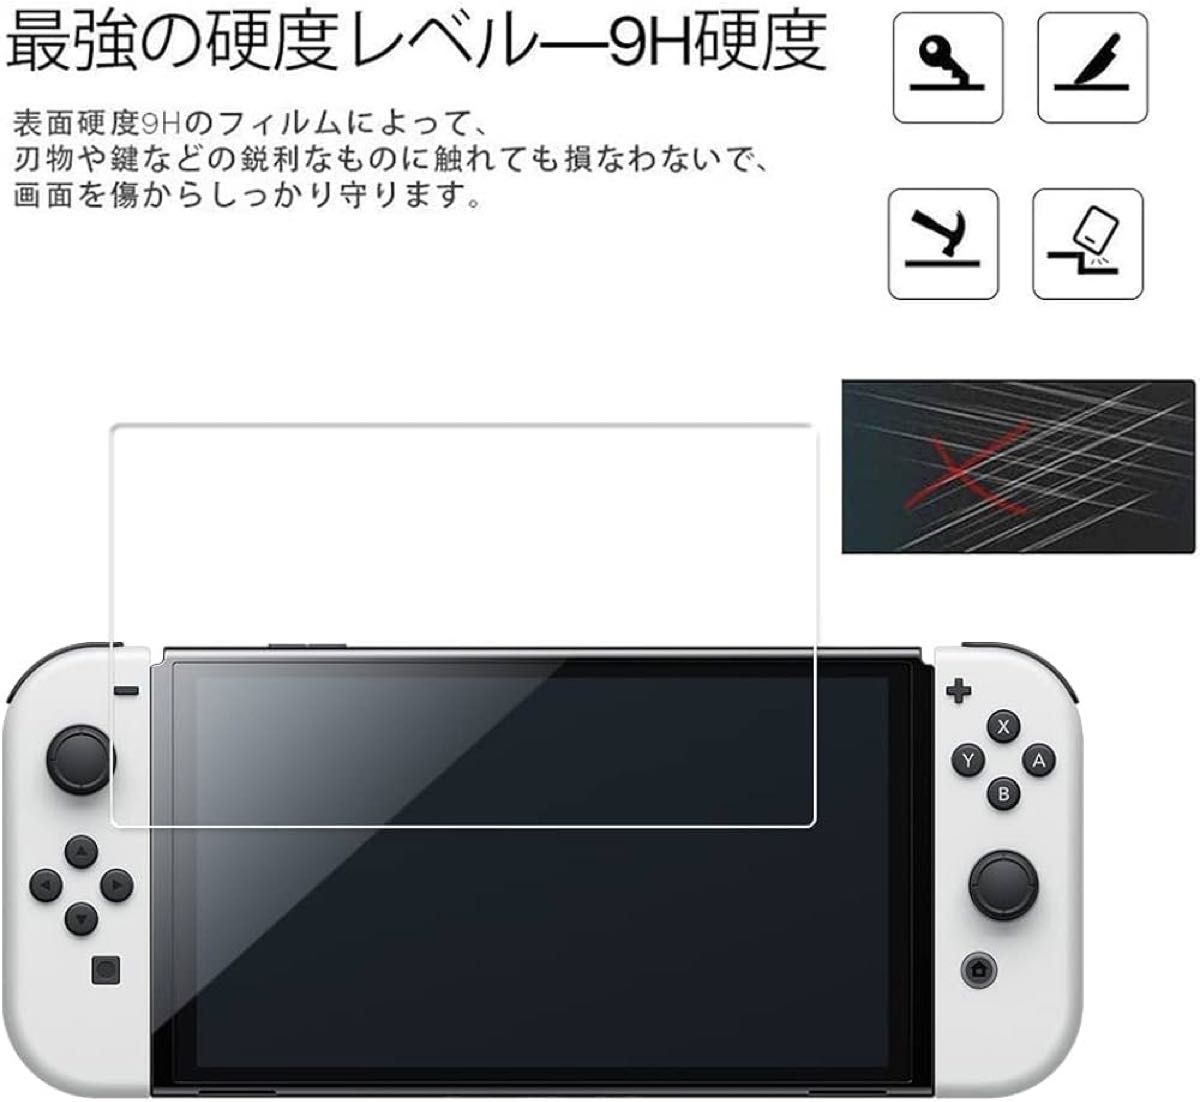 Nintendo Switch 有機ELモデル OLED 用 ガラスフィルム